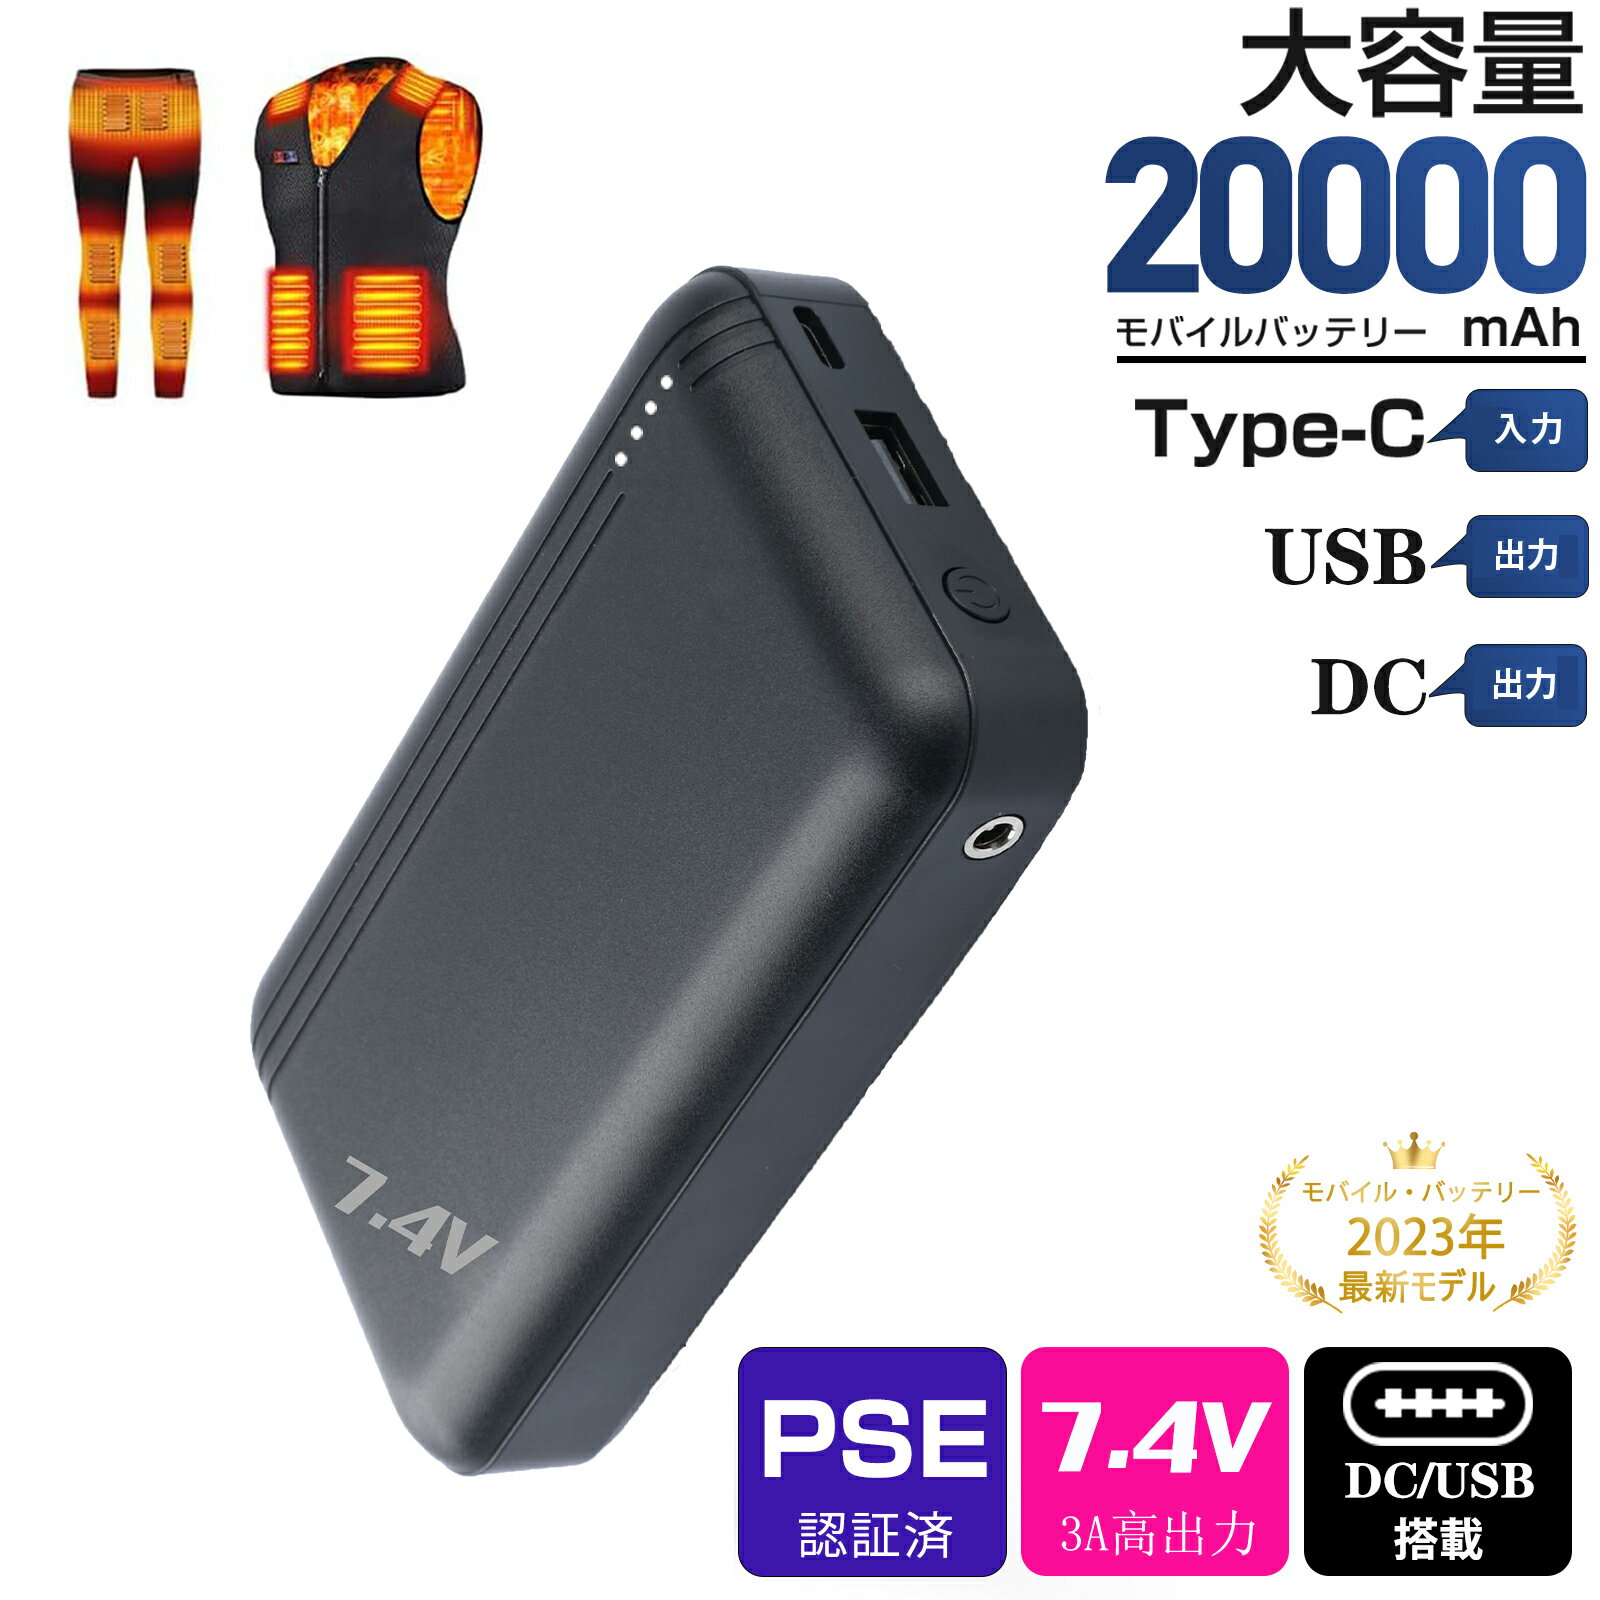 【DC/USB出力】モバイルバッテリー 20000mAh 電